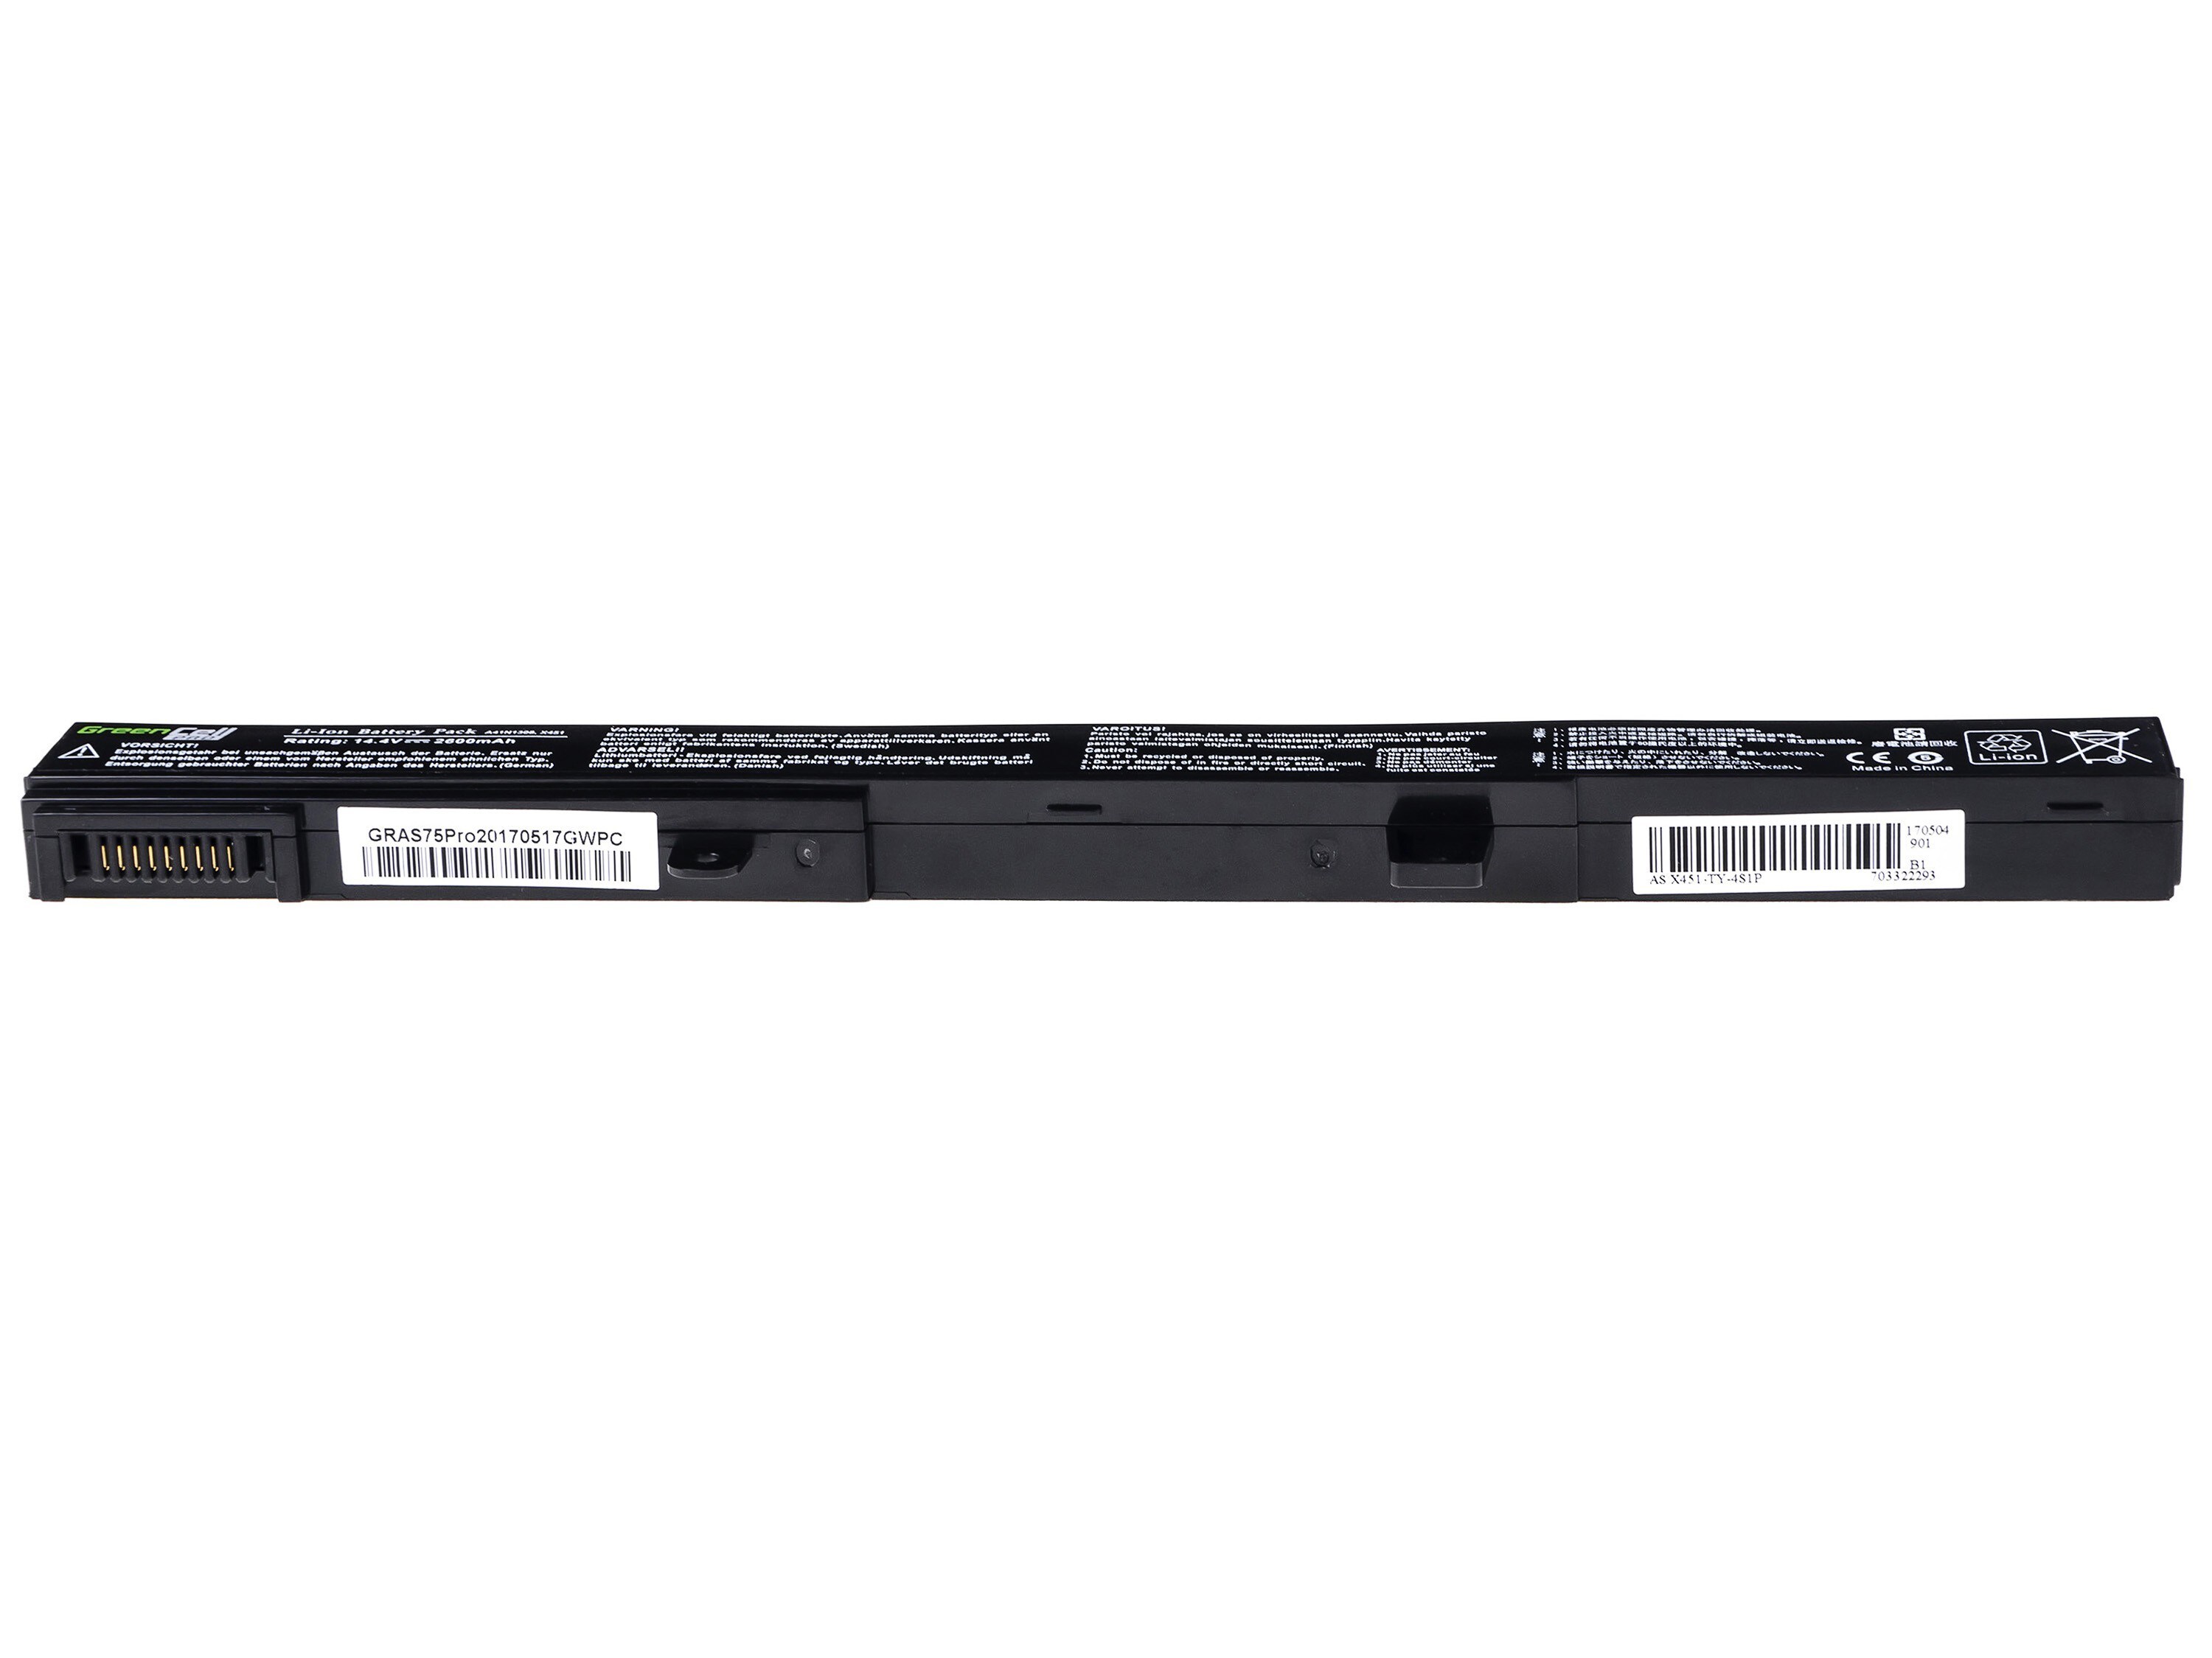 Green Cell PRO laptopbatteri til Asus R508 R556 R509 X551